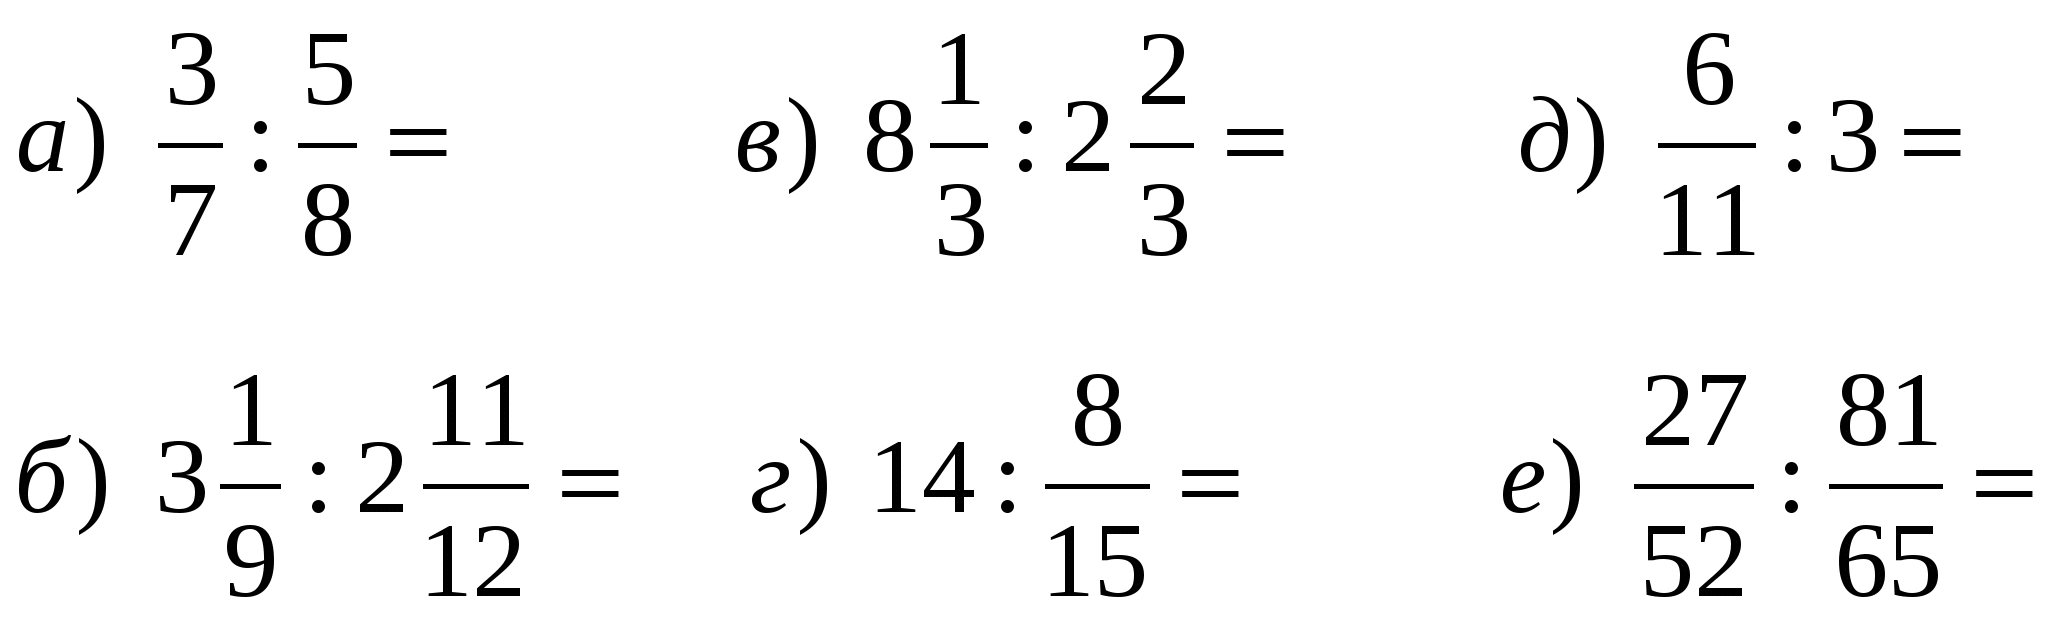 Калькулятор примеров по математике 6 класс. Деление дробей 6 класс задания. Задания по математика 6 класс. Математика 6 класс примеры. Примеры по математике 6 класс.